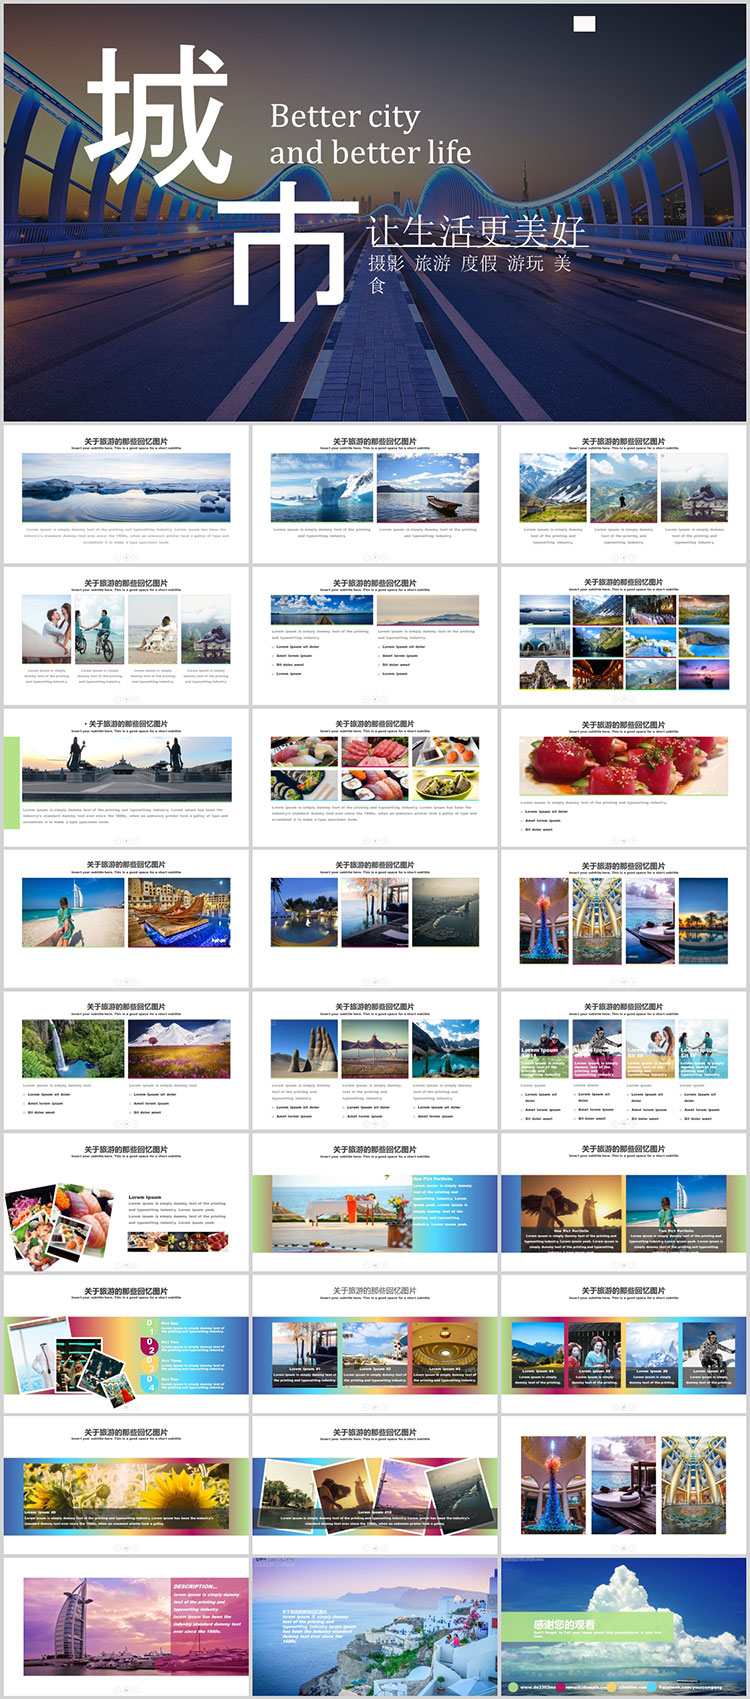 旅行相册PPT模板 旅游海边风景摄影相册宣传照片纪念册动态素材 第47张